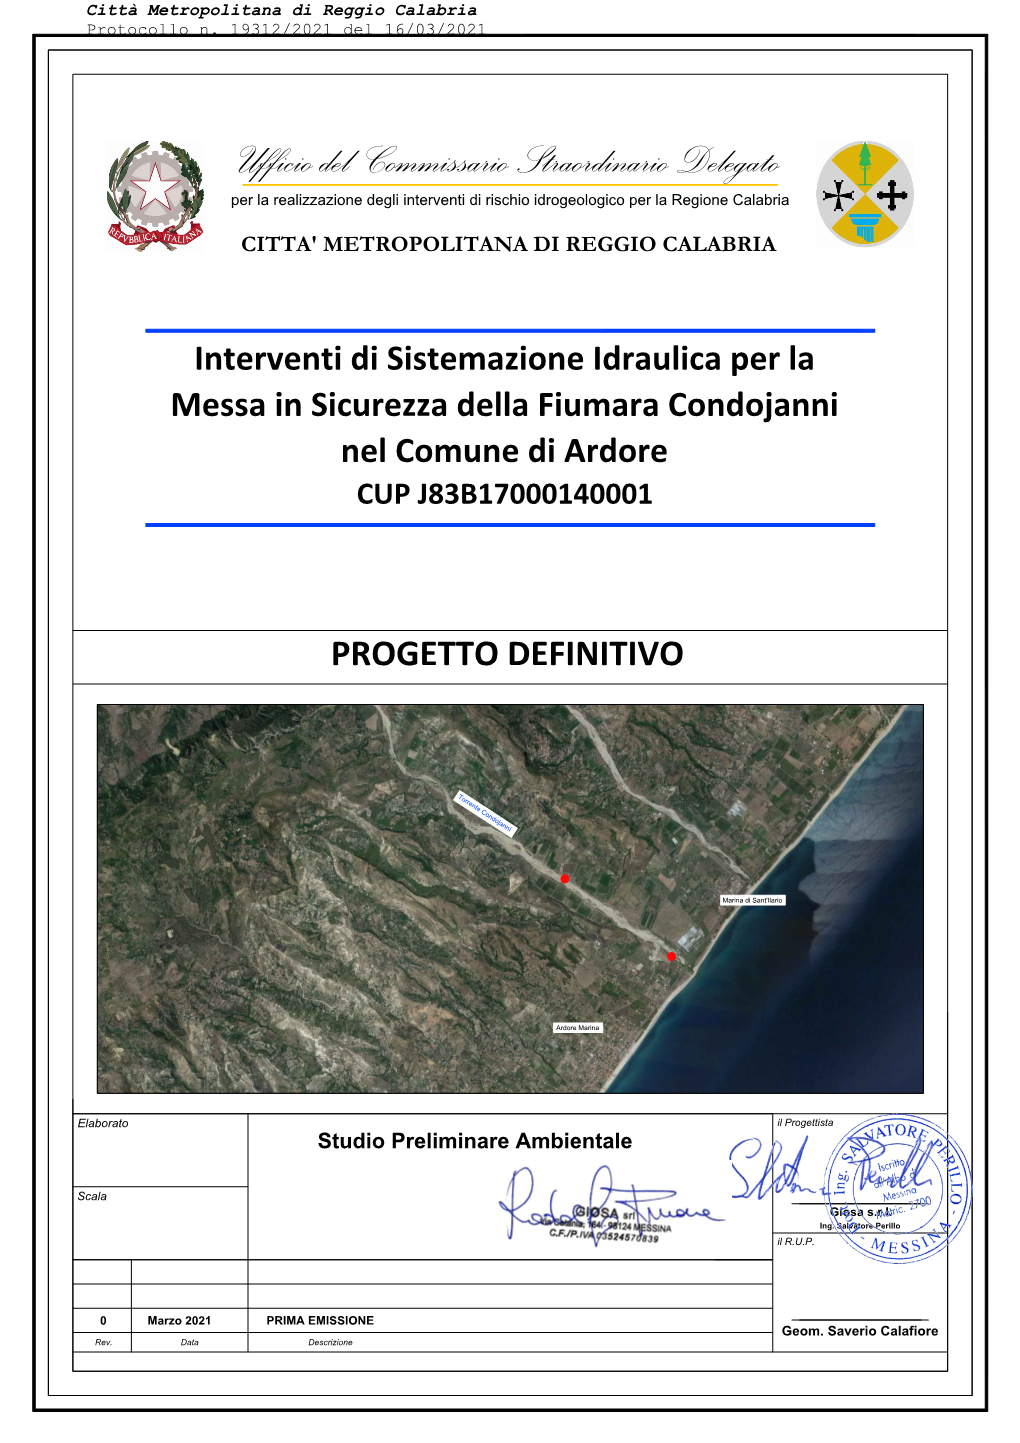 Ufficio Del Commissario Straordinario Delegato Per La Realizzazione Degli Interventi Di Rischio Idrogeologico Per La Regione Calabria